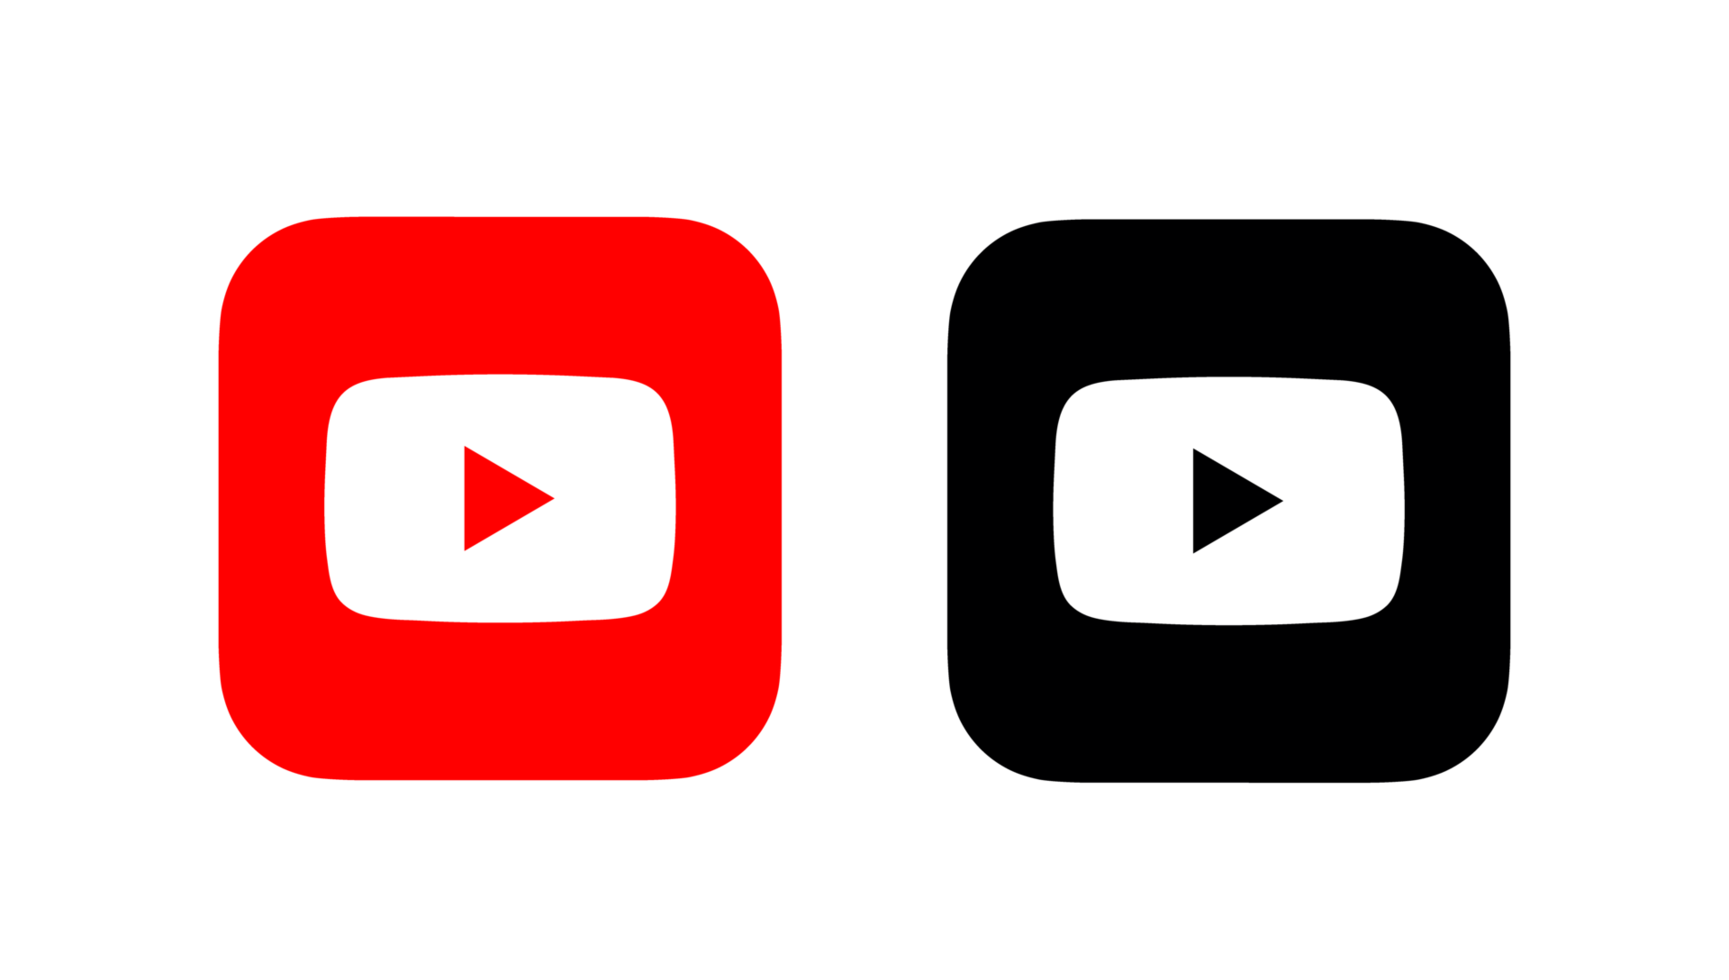 Logo Youtube - Biểu tượng này có thể đã trở nên quen thuộc đối với rất nhiều người dùng, tuy nhiên, nếu bạn chưa tìm hiểu về YouTube thì đó là điều rất đáng tiếc. Với một thiết kế độc đáo và dễ nhận diện, Logo Youtube là cách tốt nhất để bạn truy cập vào platform này và khám phá những thứ thú vị.